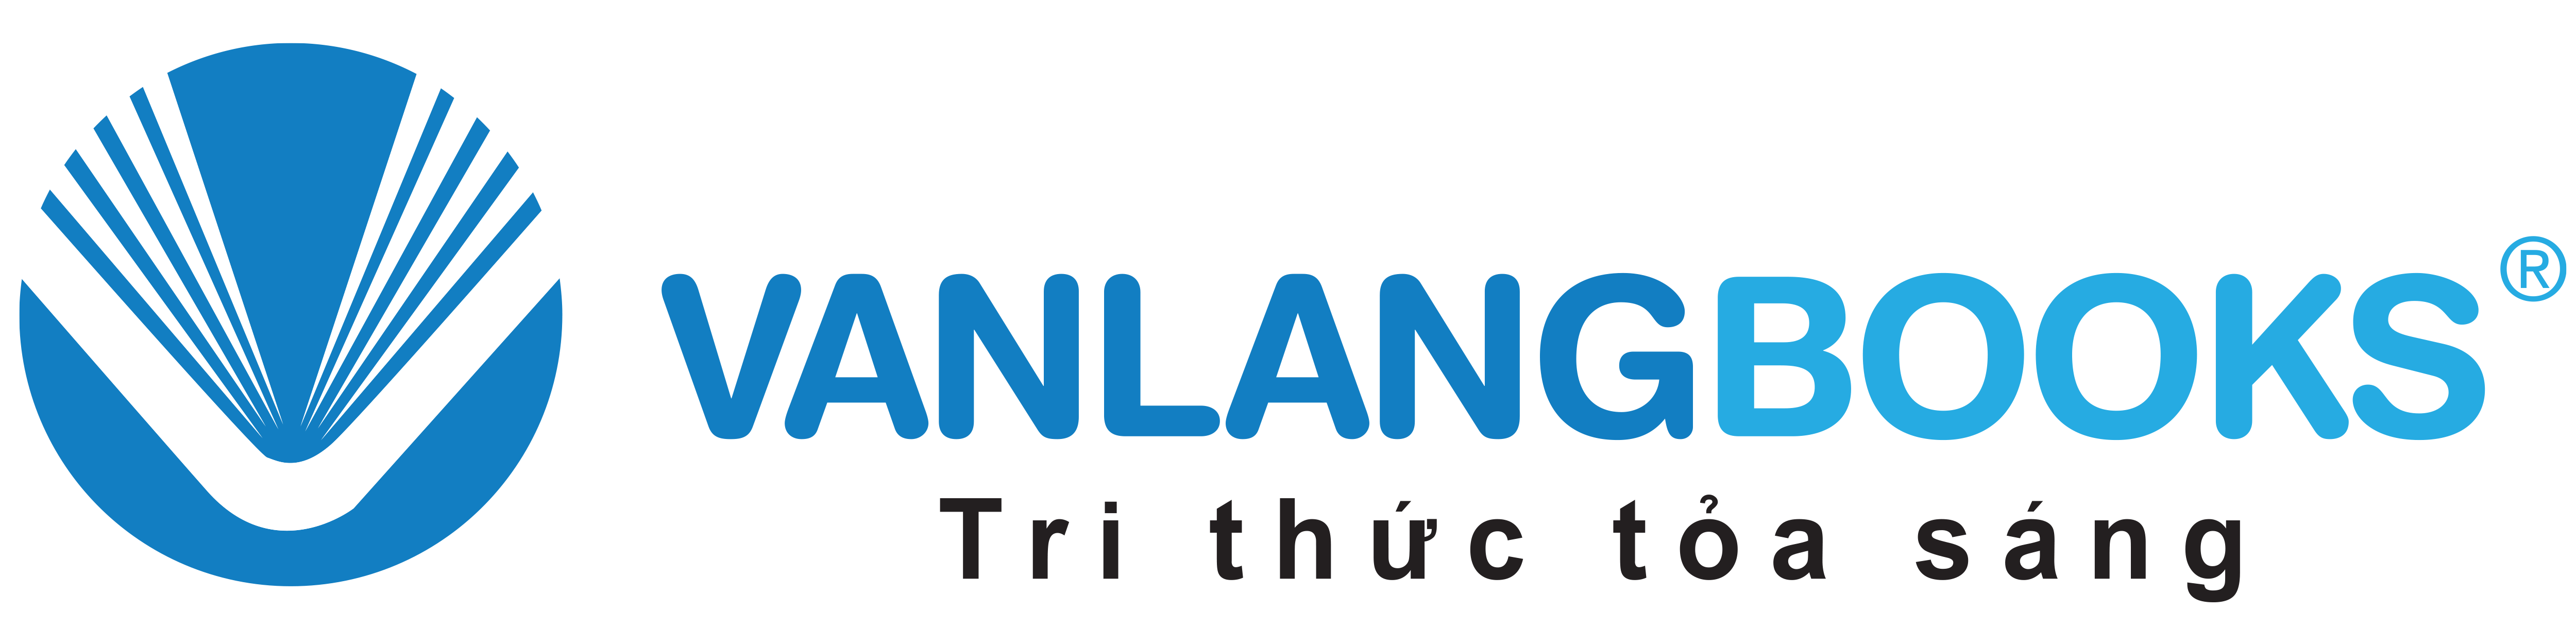 logo Nhà Sách Văn Lang - Vanlangbooks